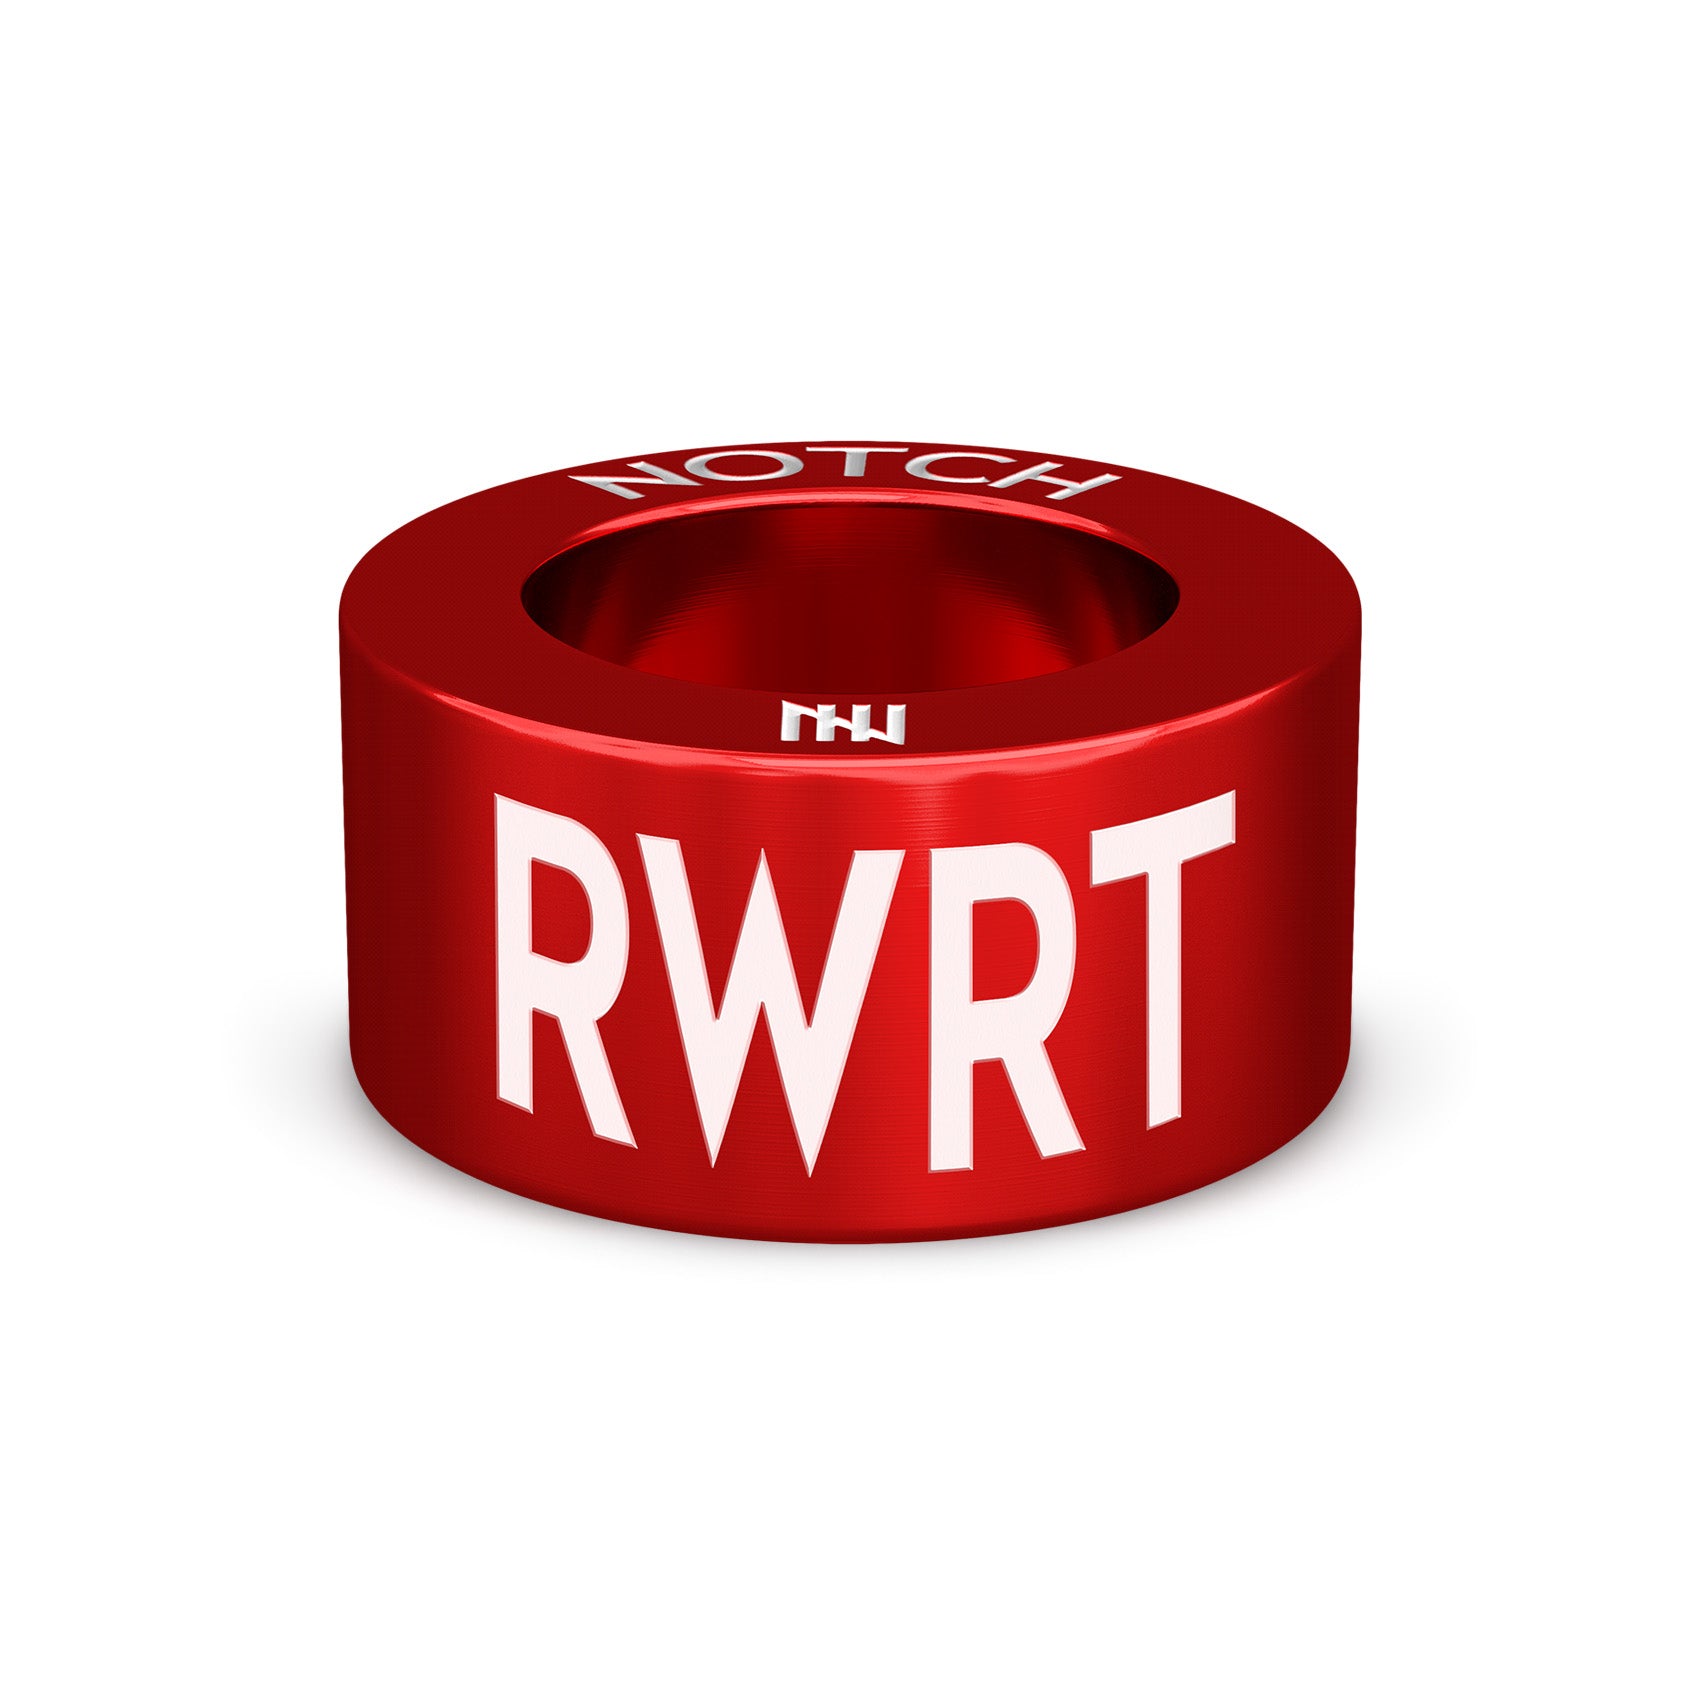 RWRT NOTCH Charm